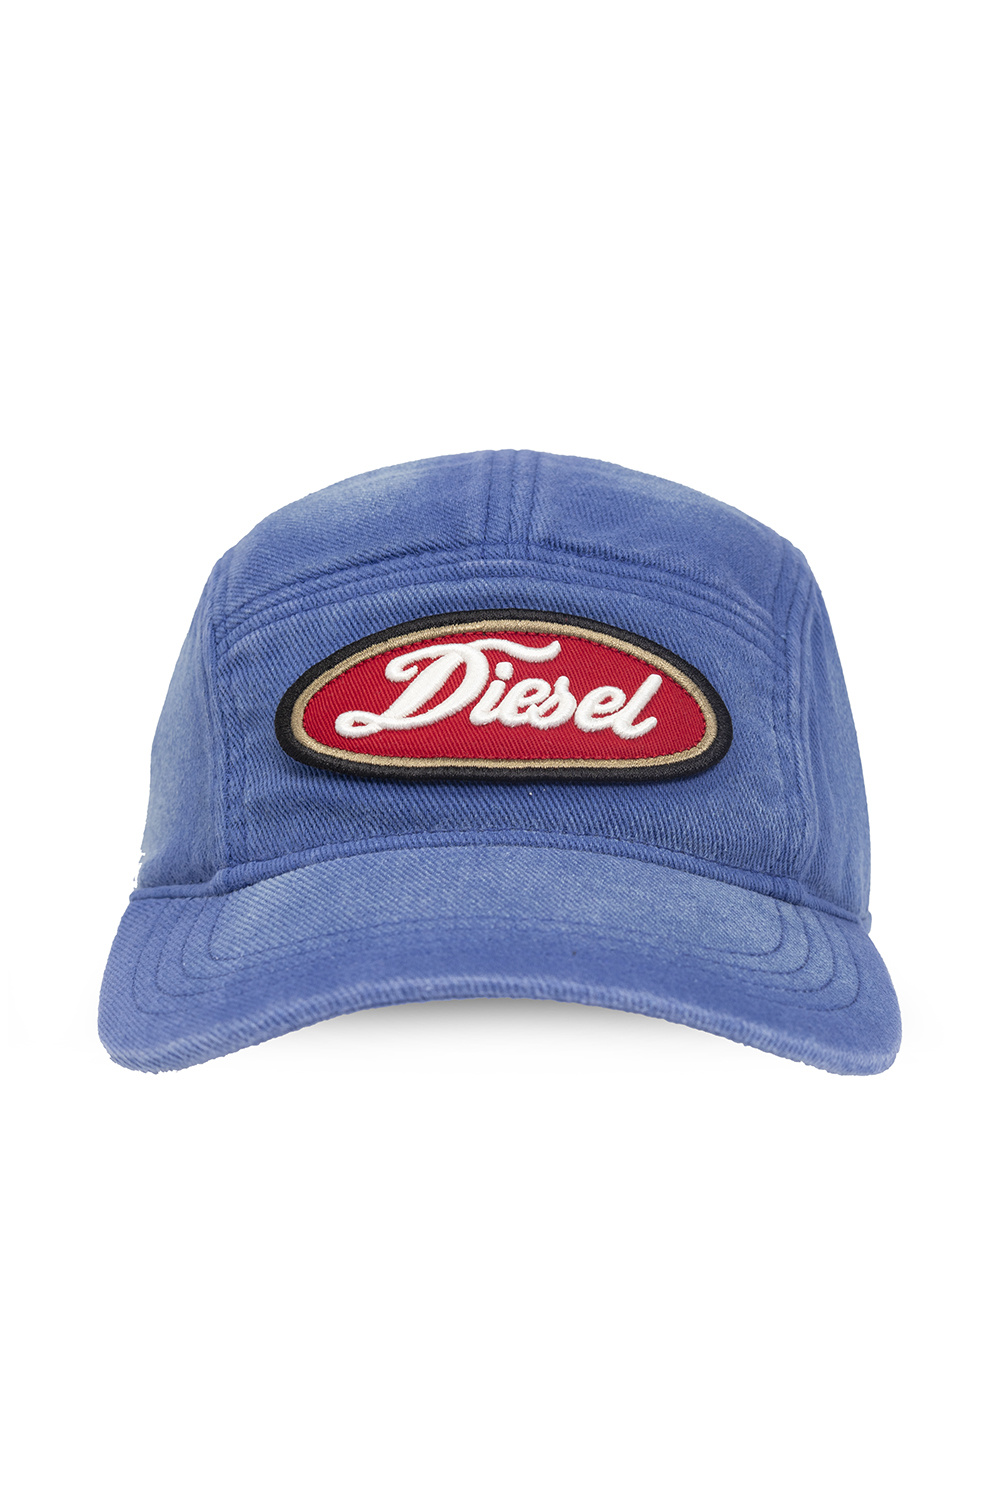 Diesel 'cut-out sun hat